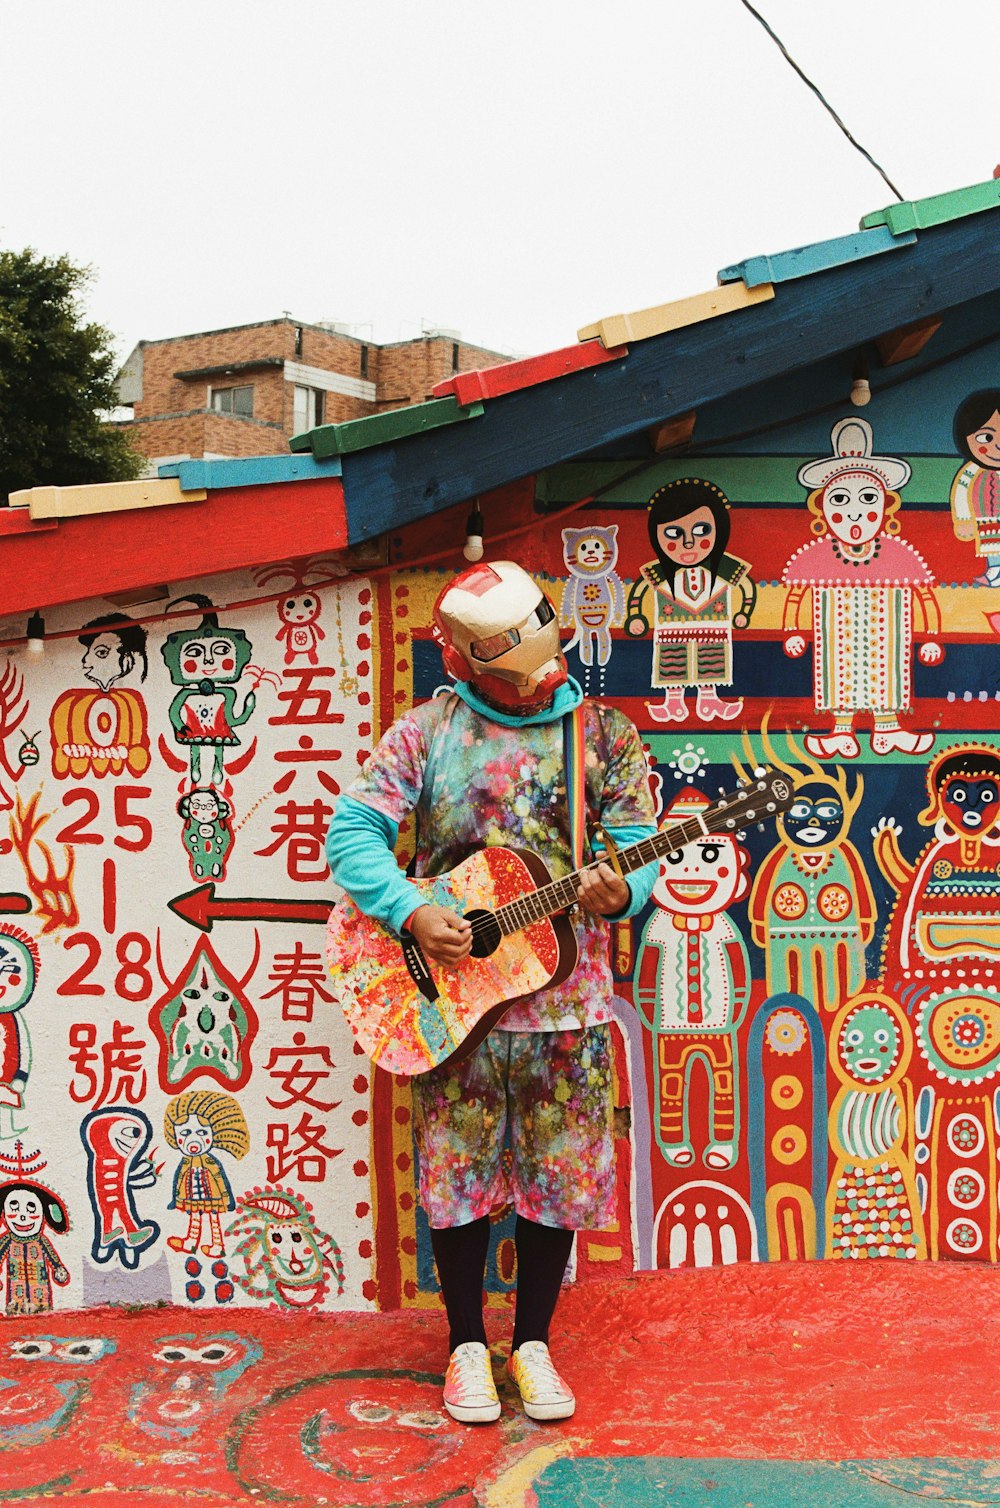 파란색과 흰색 스트라이프 긴 소매 셔츠를 입은 남자가 빨간색과 흰색 벽 근처에서 기타를 연주하고 있다